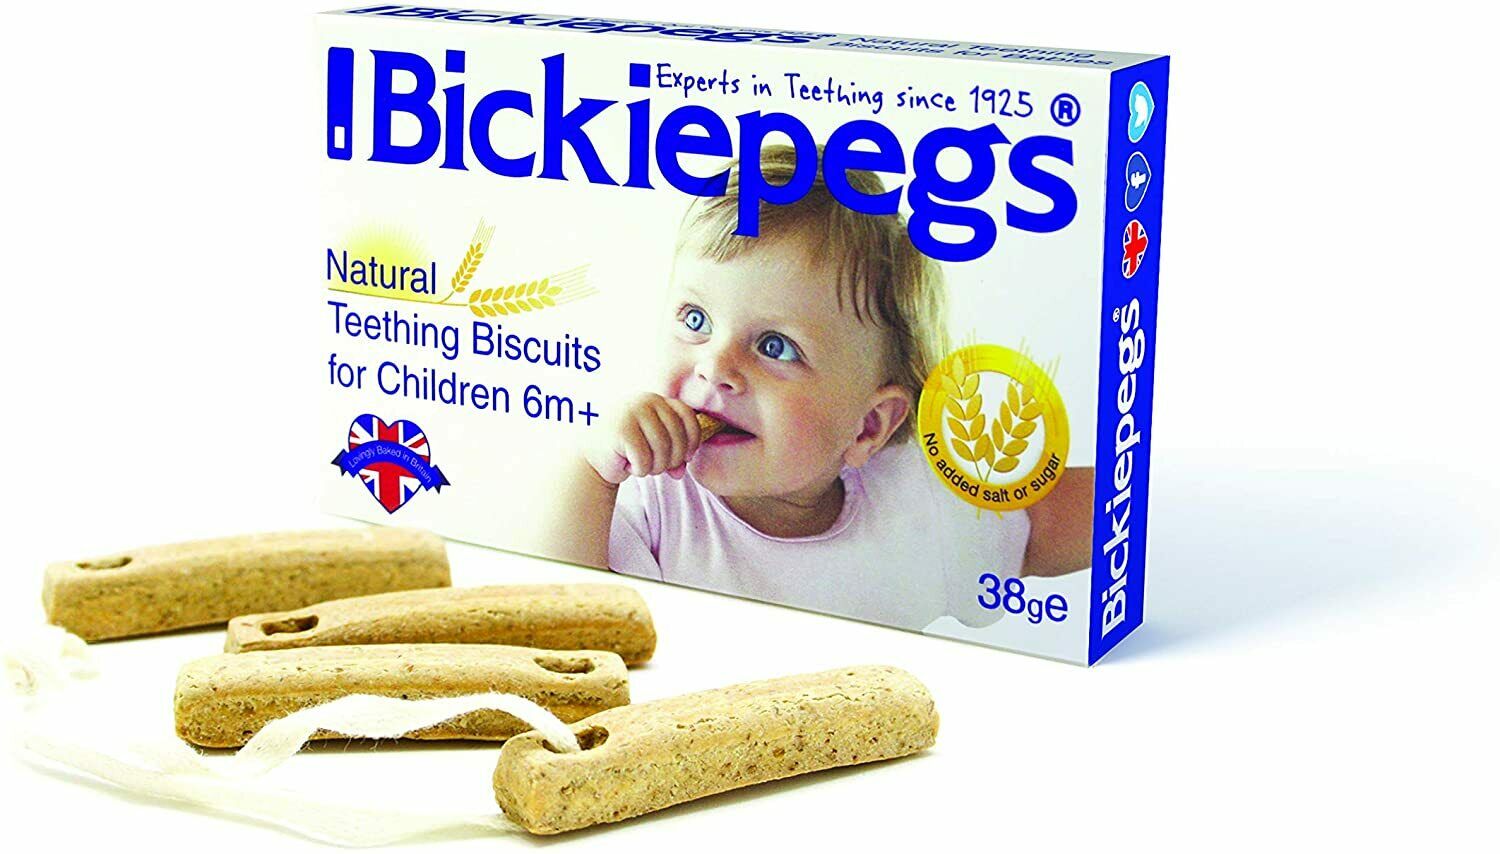 Bickiepegs Teething Biscuits 38g